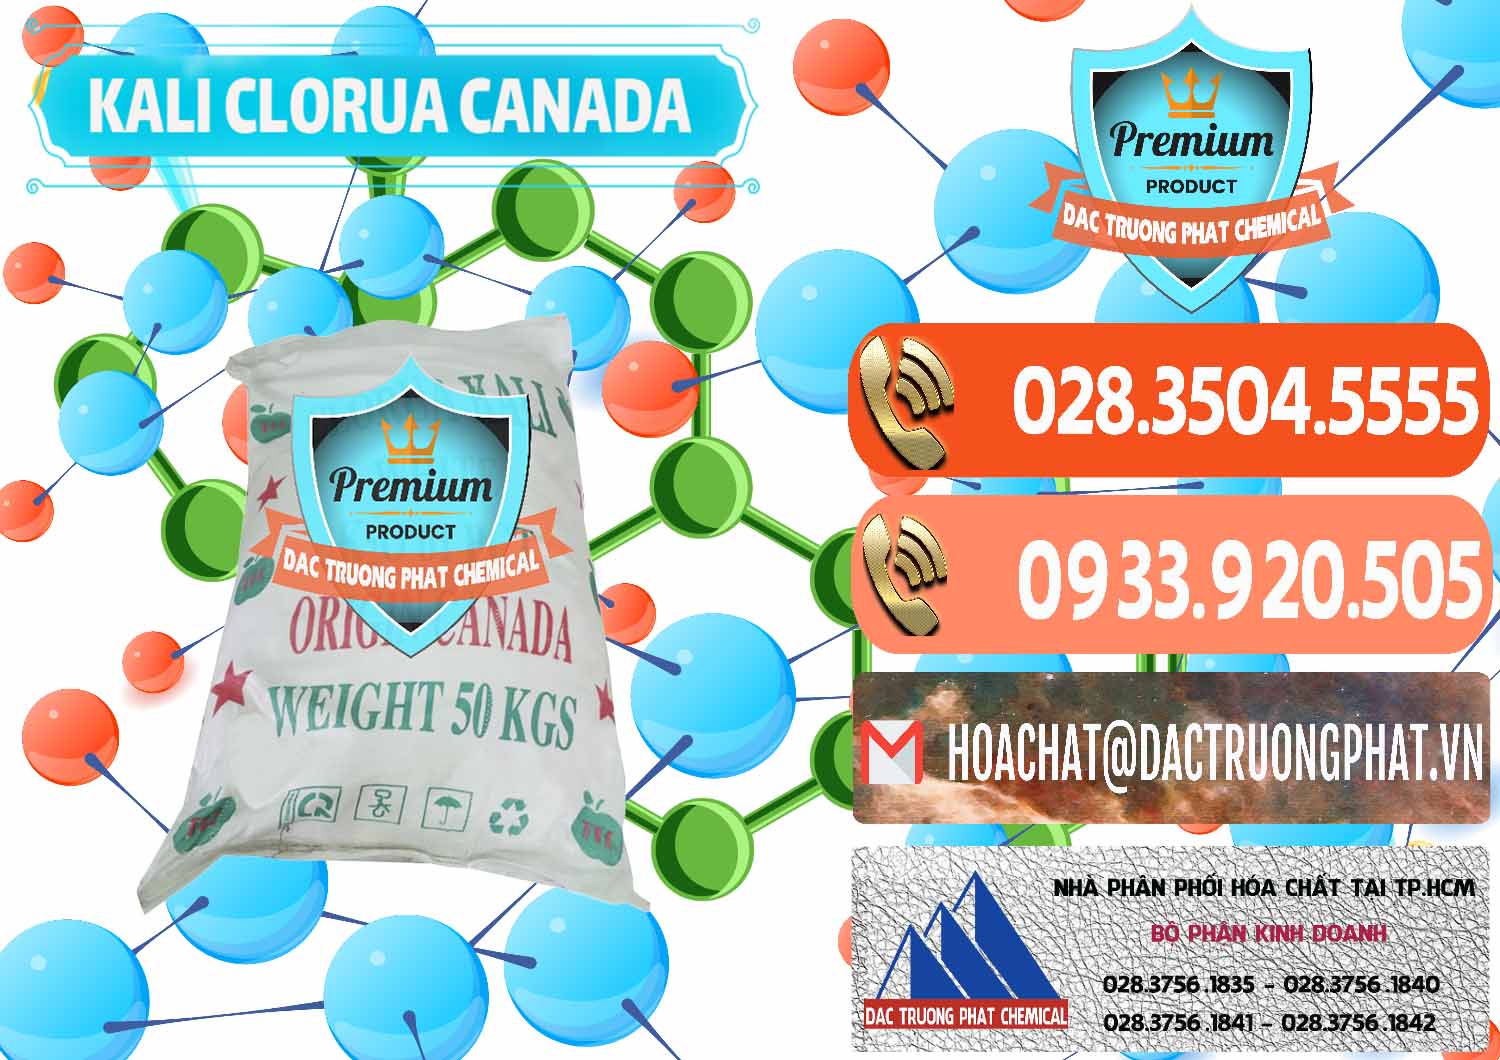 Cty kinh doanh _ bán KCL – Kali Clorua Trắng Canada - 0437 - Phân phối hóa chất tại TP.HCM - hoachatmientay.com